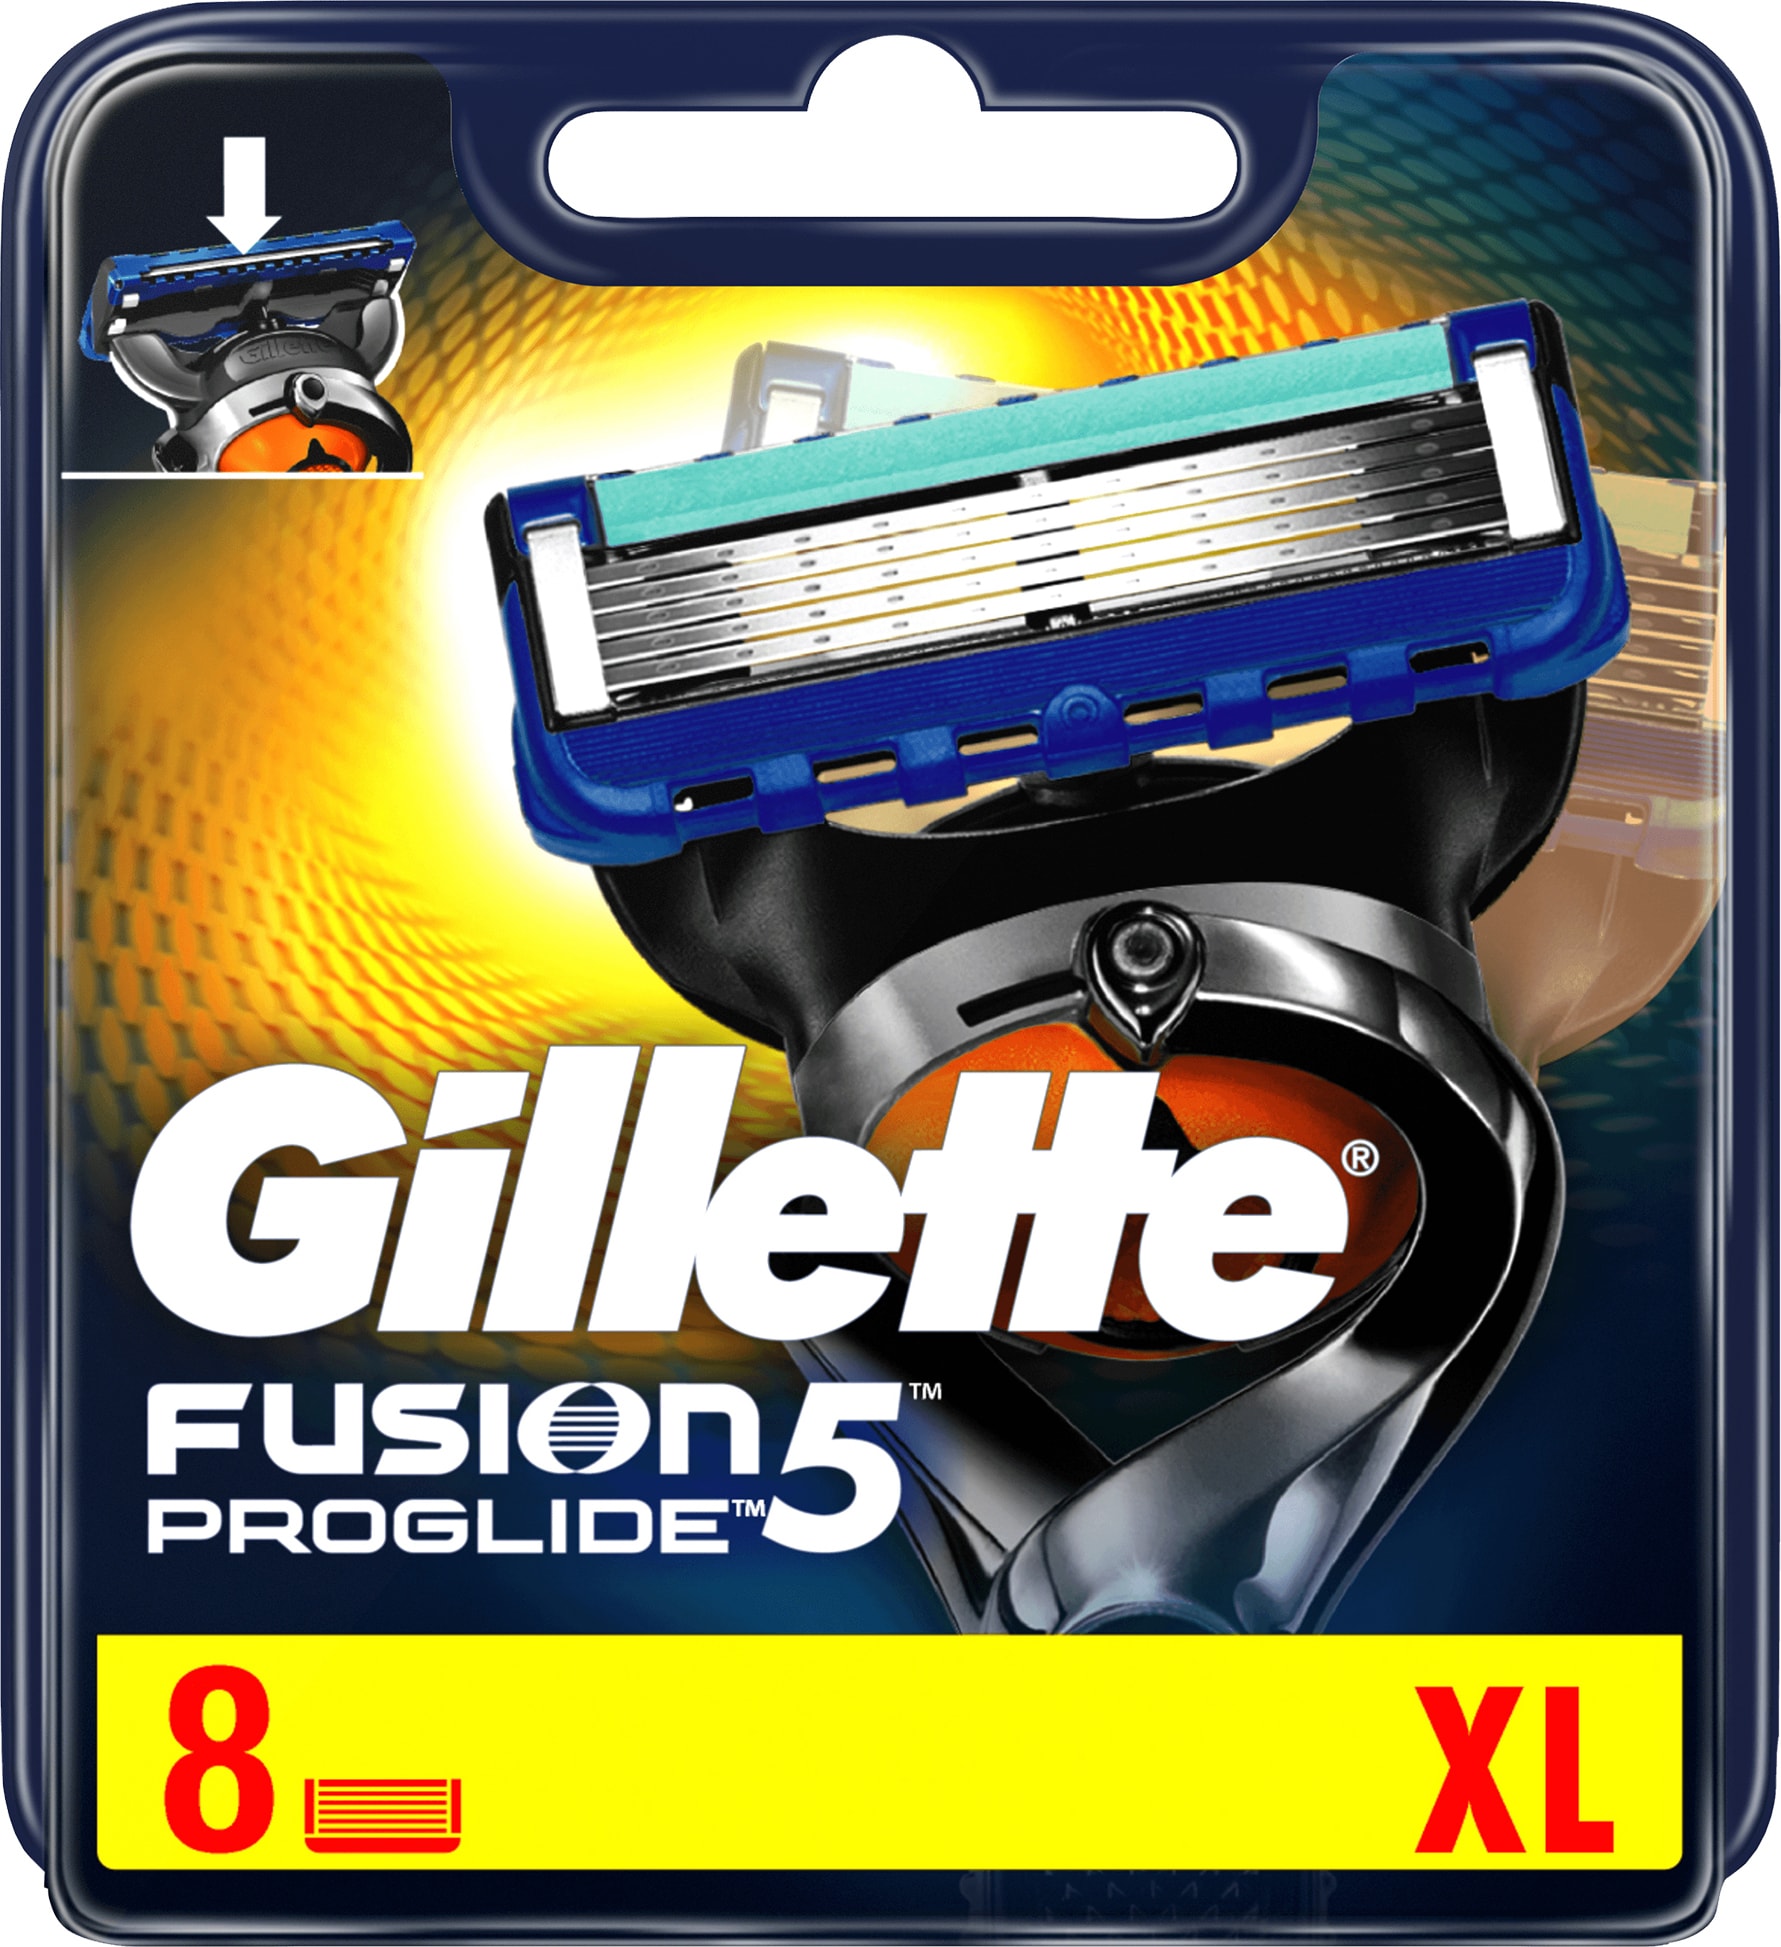 Billig Gillette Fusion 5 Proglide barberblade 8-pak – 229 kr.